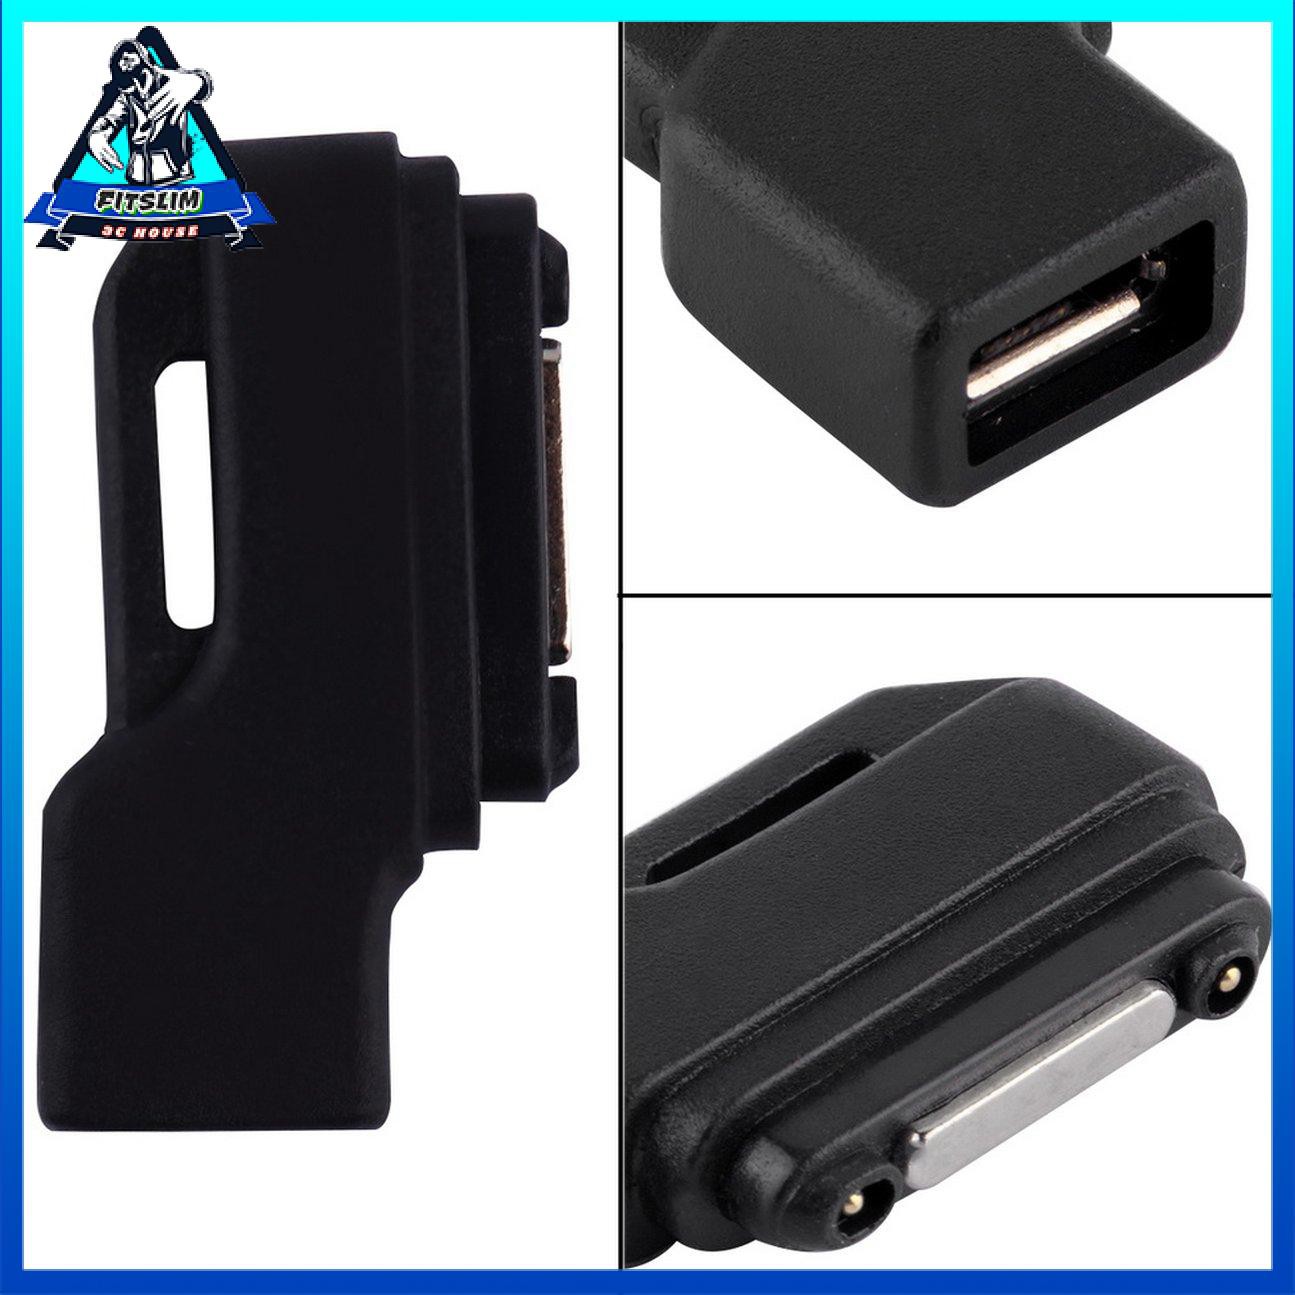 Bộ chuyển đổi Dock sạc Micro USB sang Magnetic Charger cho Sony Xperia Z1 / Z2 / Z3